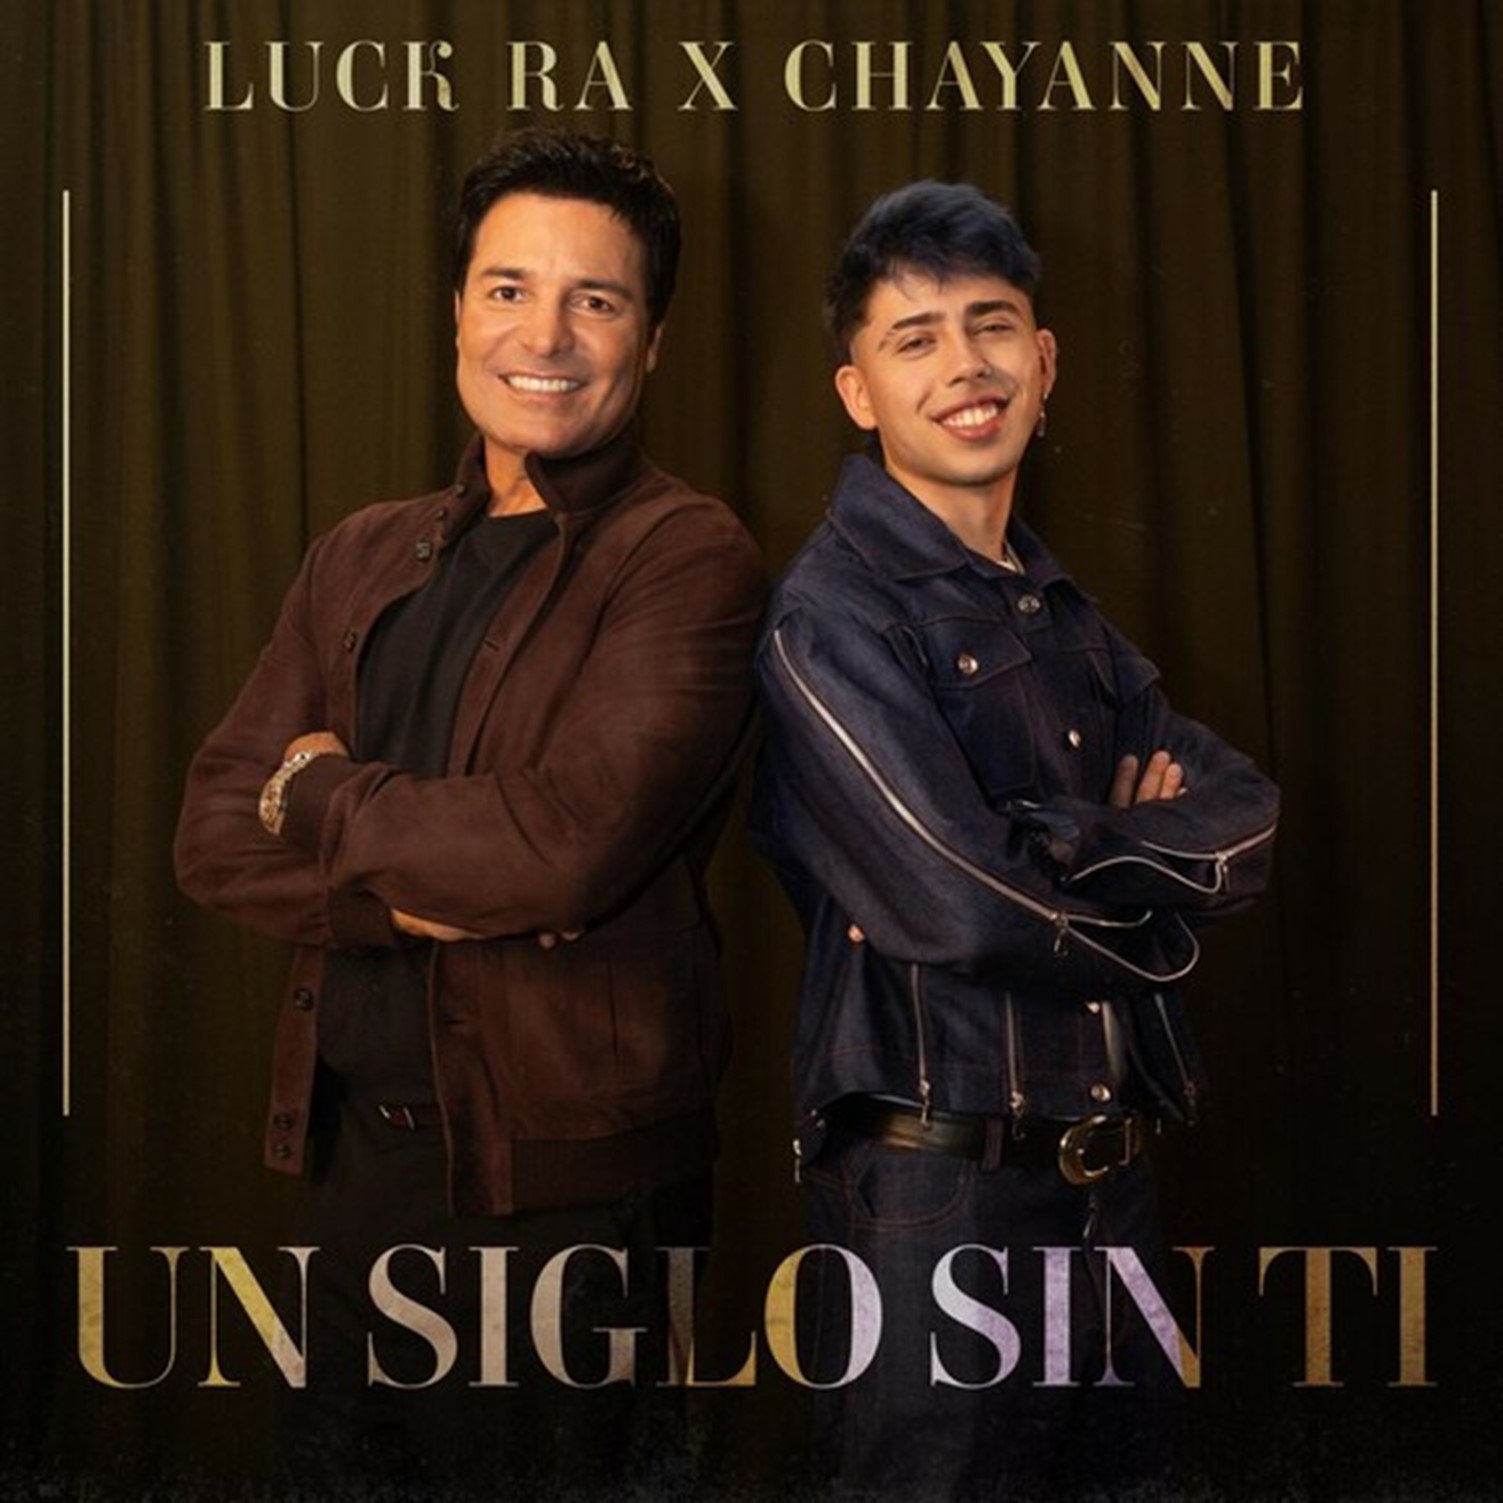 LUCK RA estrena nueva versión del clásico “UN SIGLO SIN TI” a 21 años de su lanzamiento junto a su creador CHAYANNE